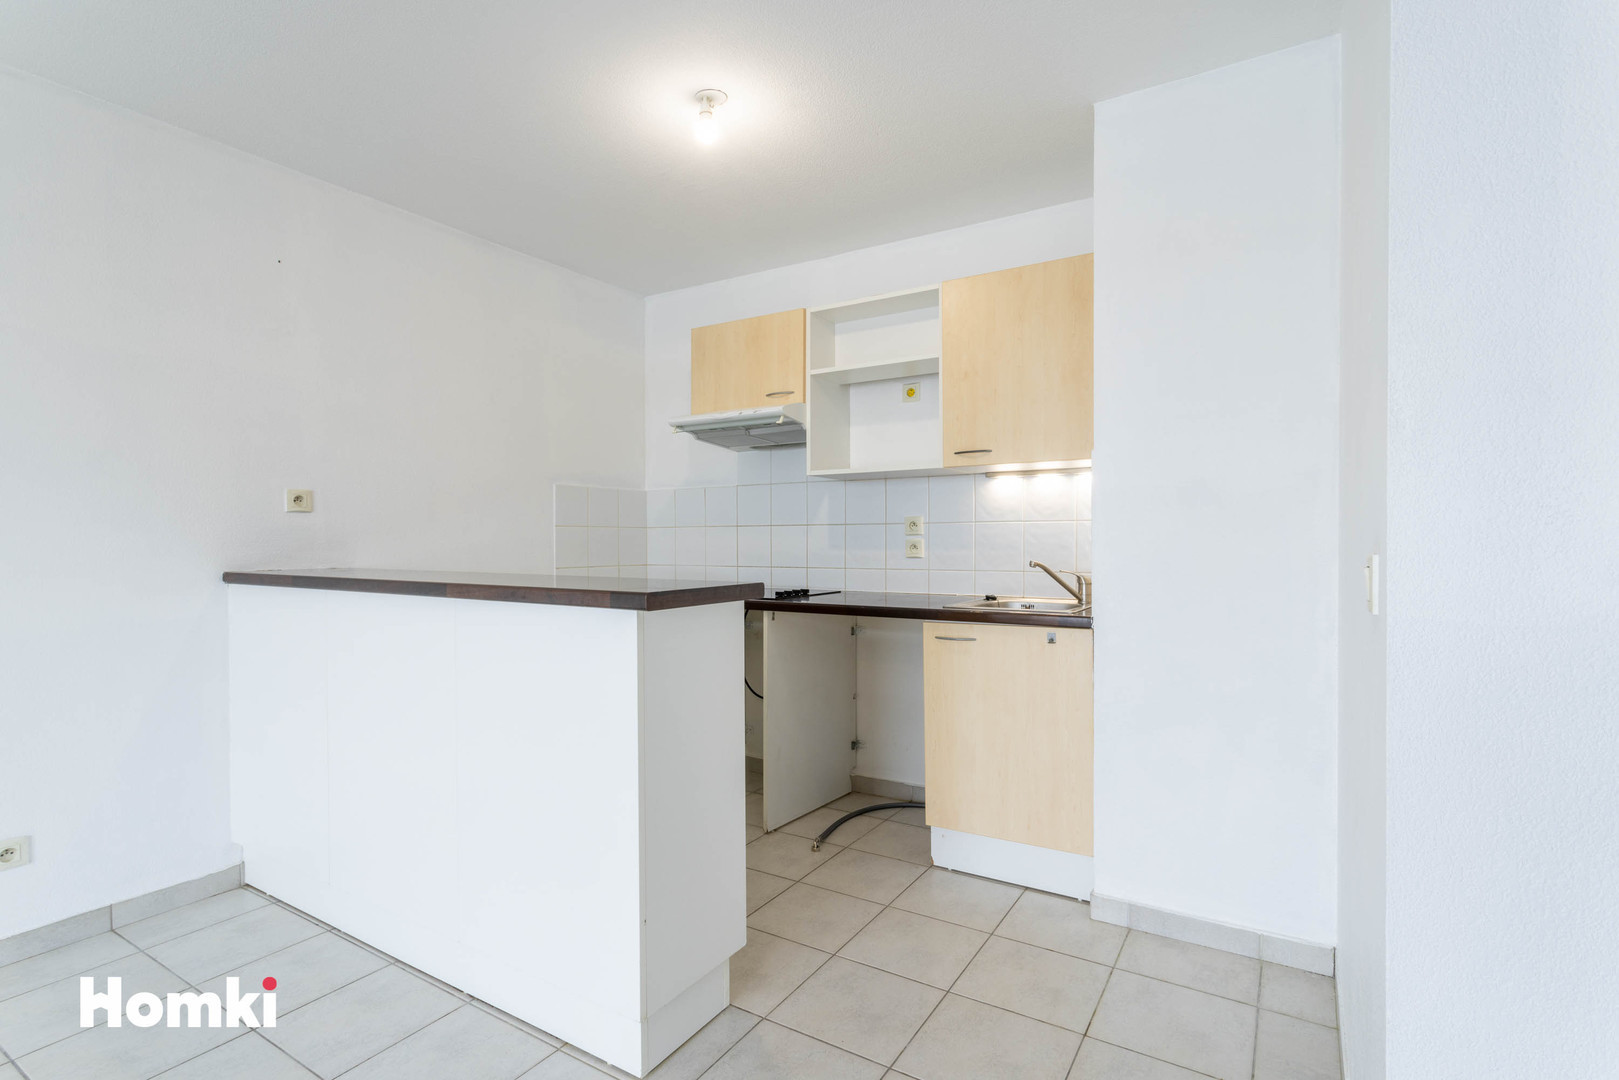 Homki - Vente Appartement  de 47.0 m² à Vétraz-Monthoux 74100